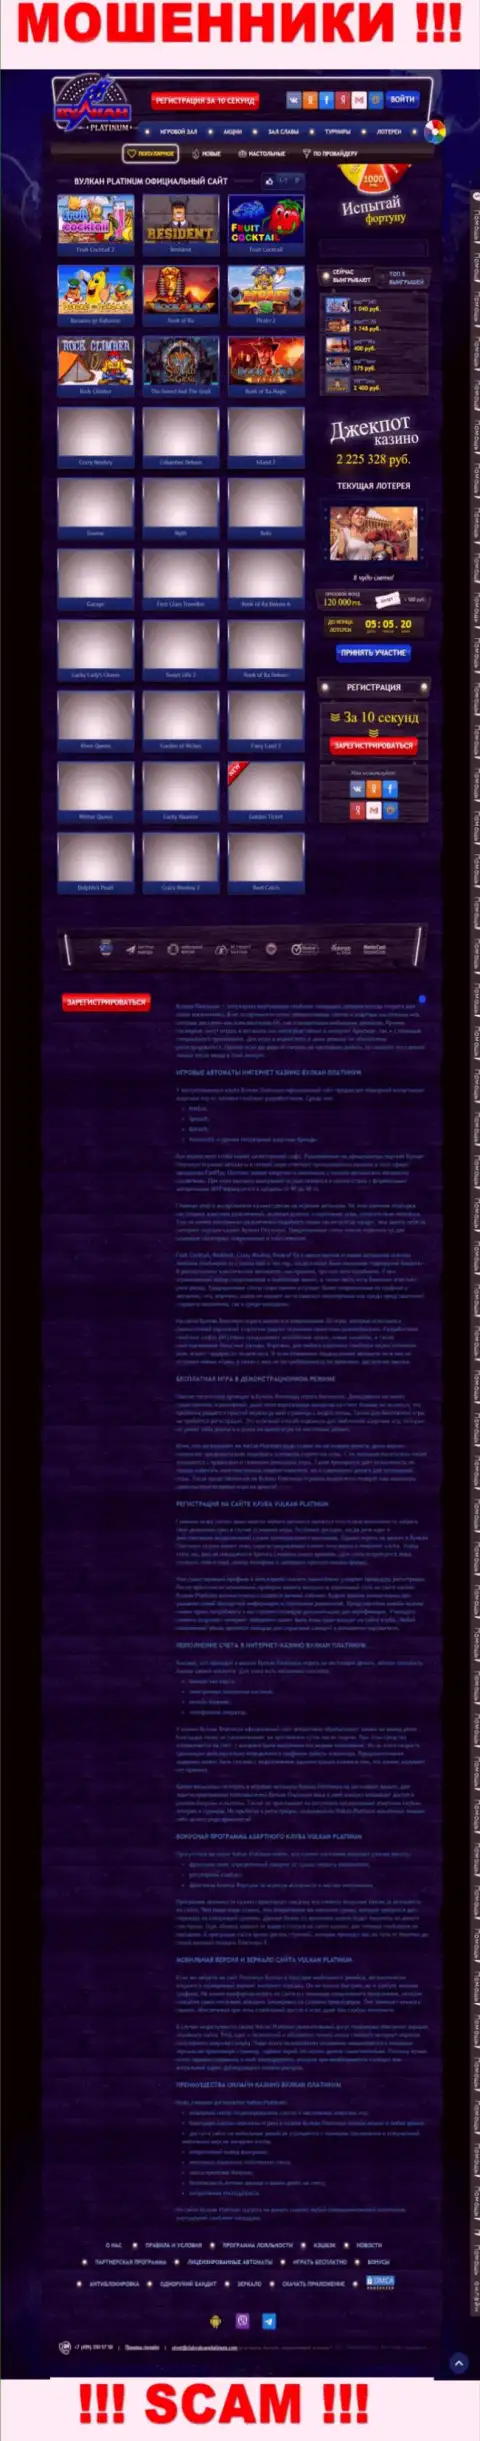 Скрин официального информационного портала Вулкан Платинум - ClubVulcanPlatinum Com